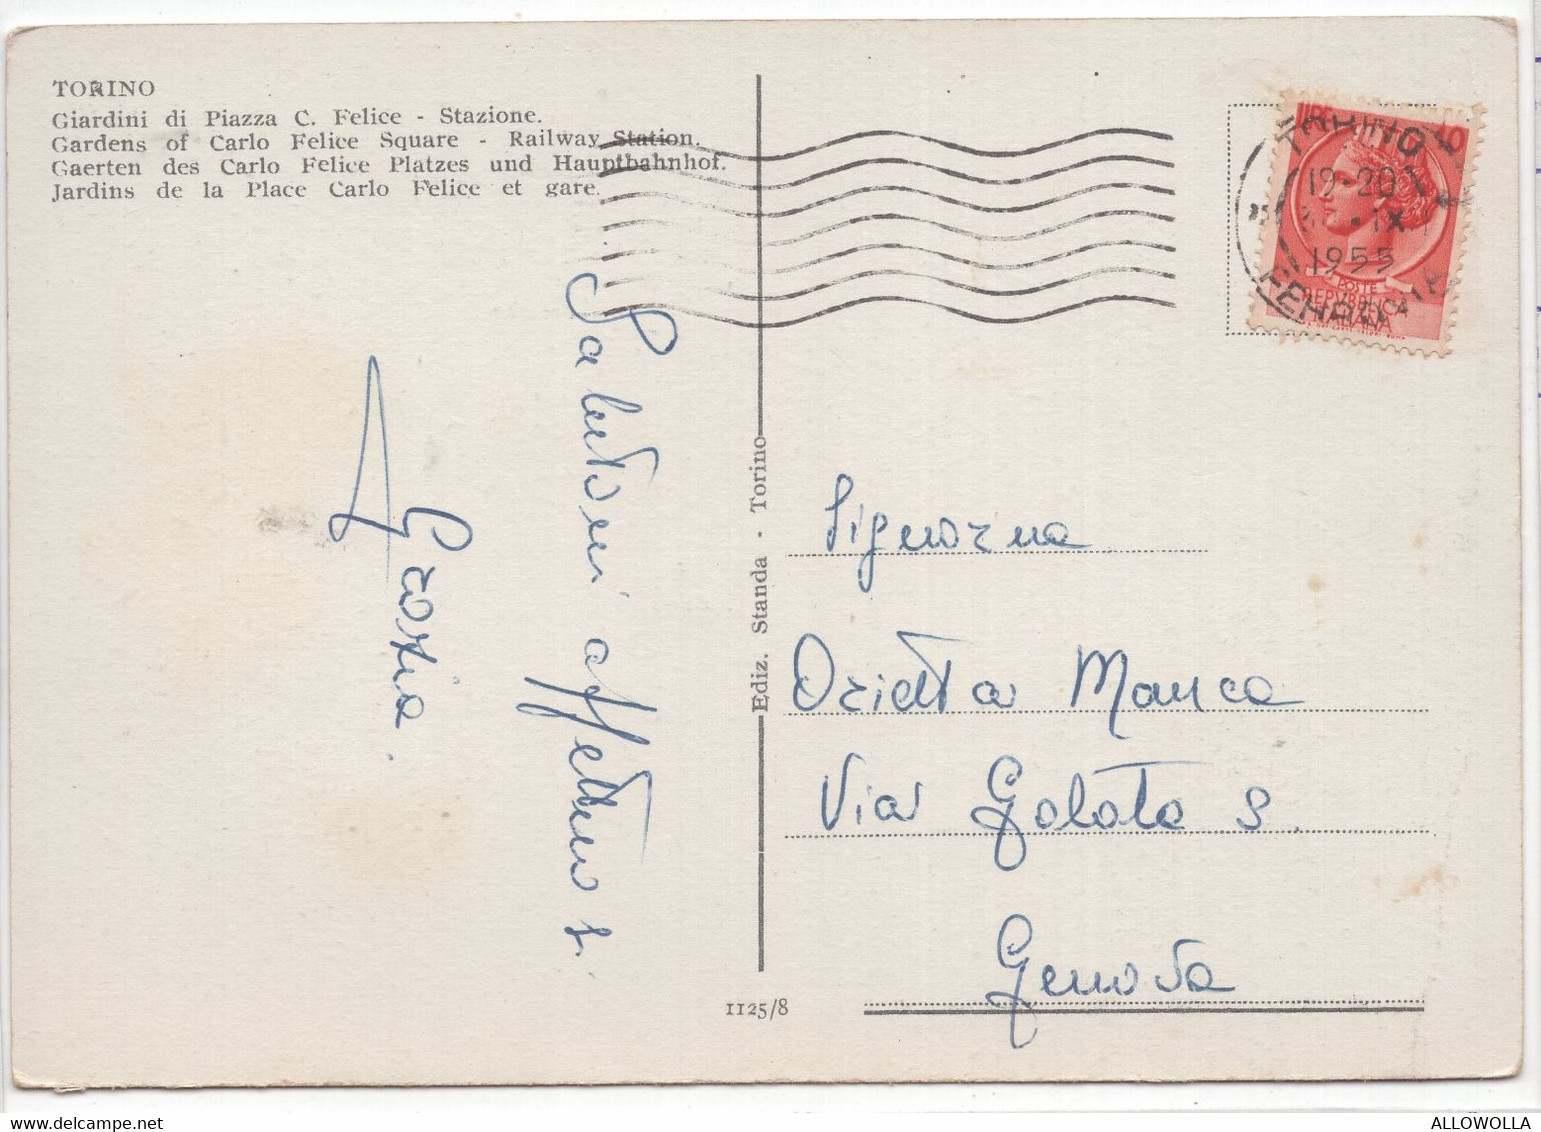 18696 " TORINO-GIARDINI DI PIAZZA C. FELICE-STAZIONE "-VERA FOTO-CART. POST. SPED.1955 - Stazione Porta Nuova